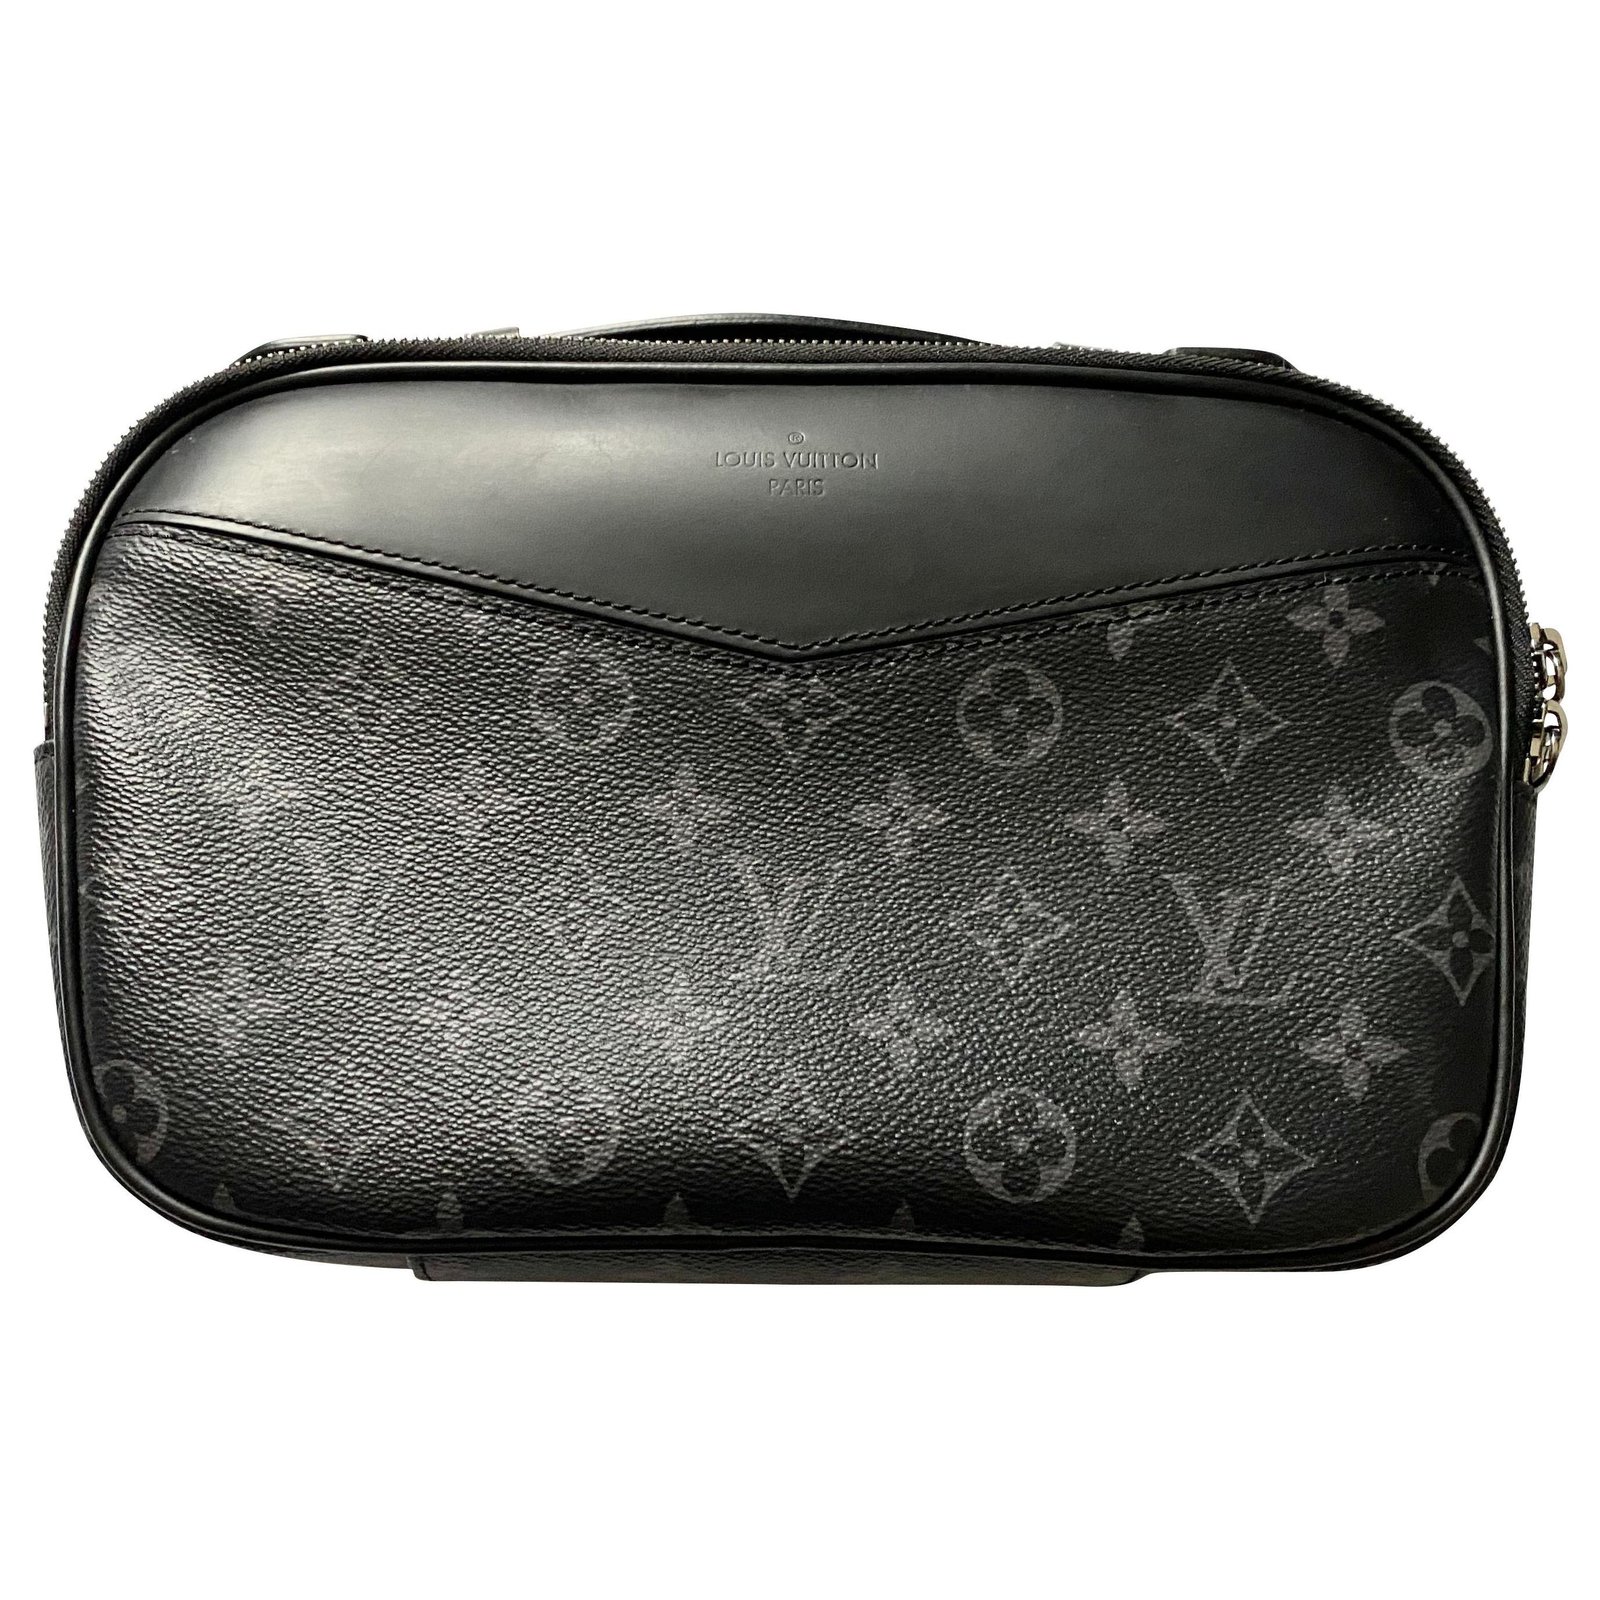 Bum bag / sac ceinture cloth bag Louis Vuitton Black in Cloth